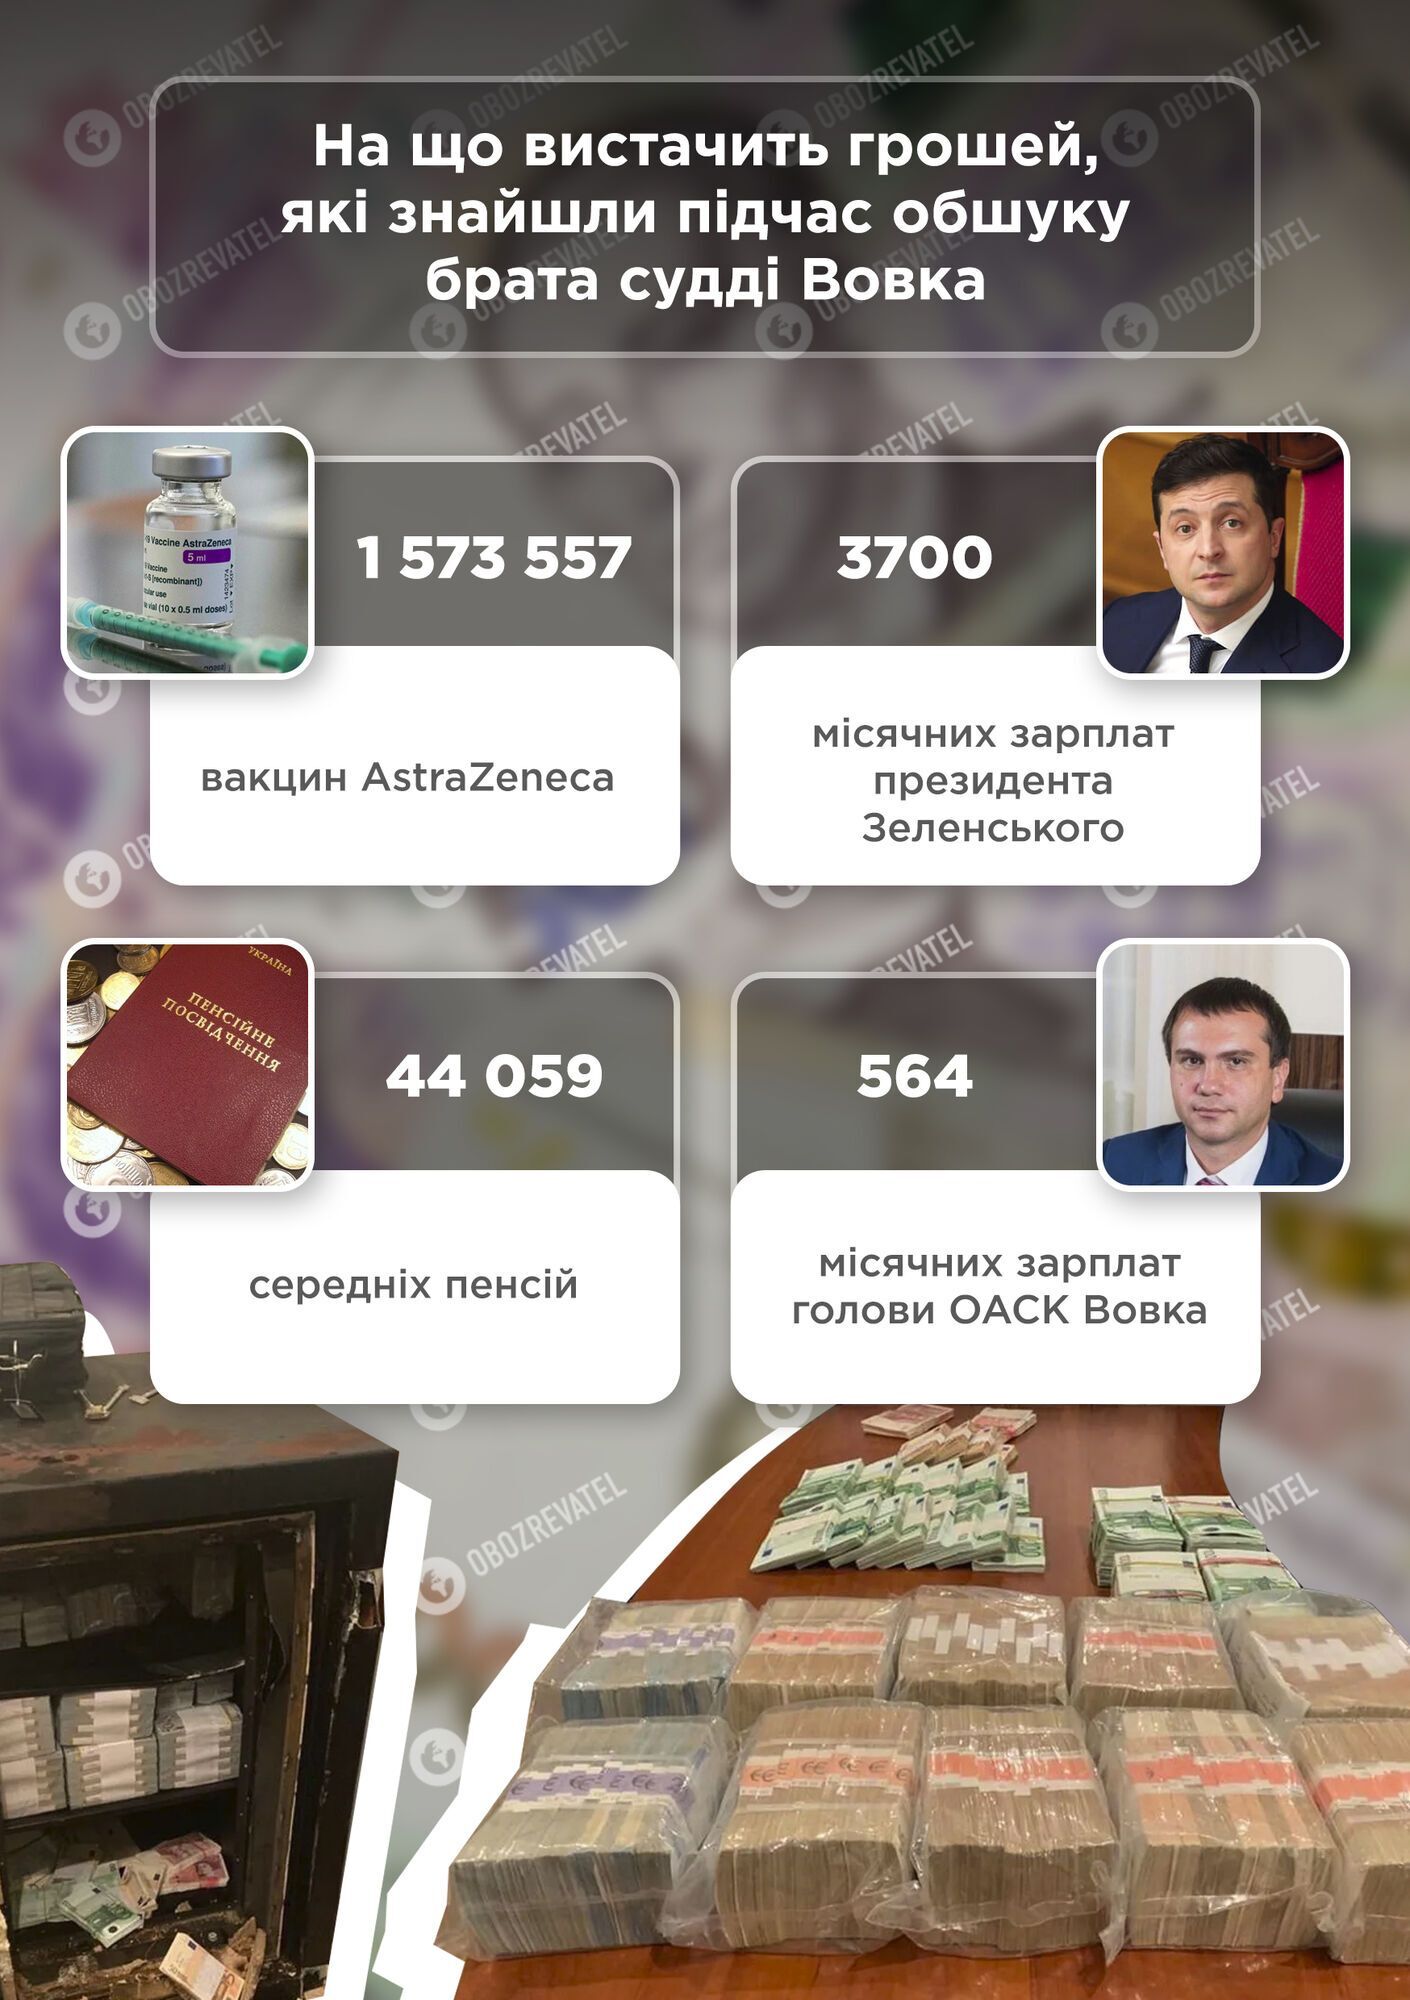 Майже 4 тис. зарплат Зеленського: на що вистачить грошей, знайдених у брата судді Вовка